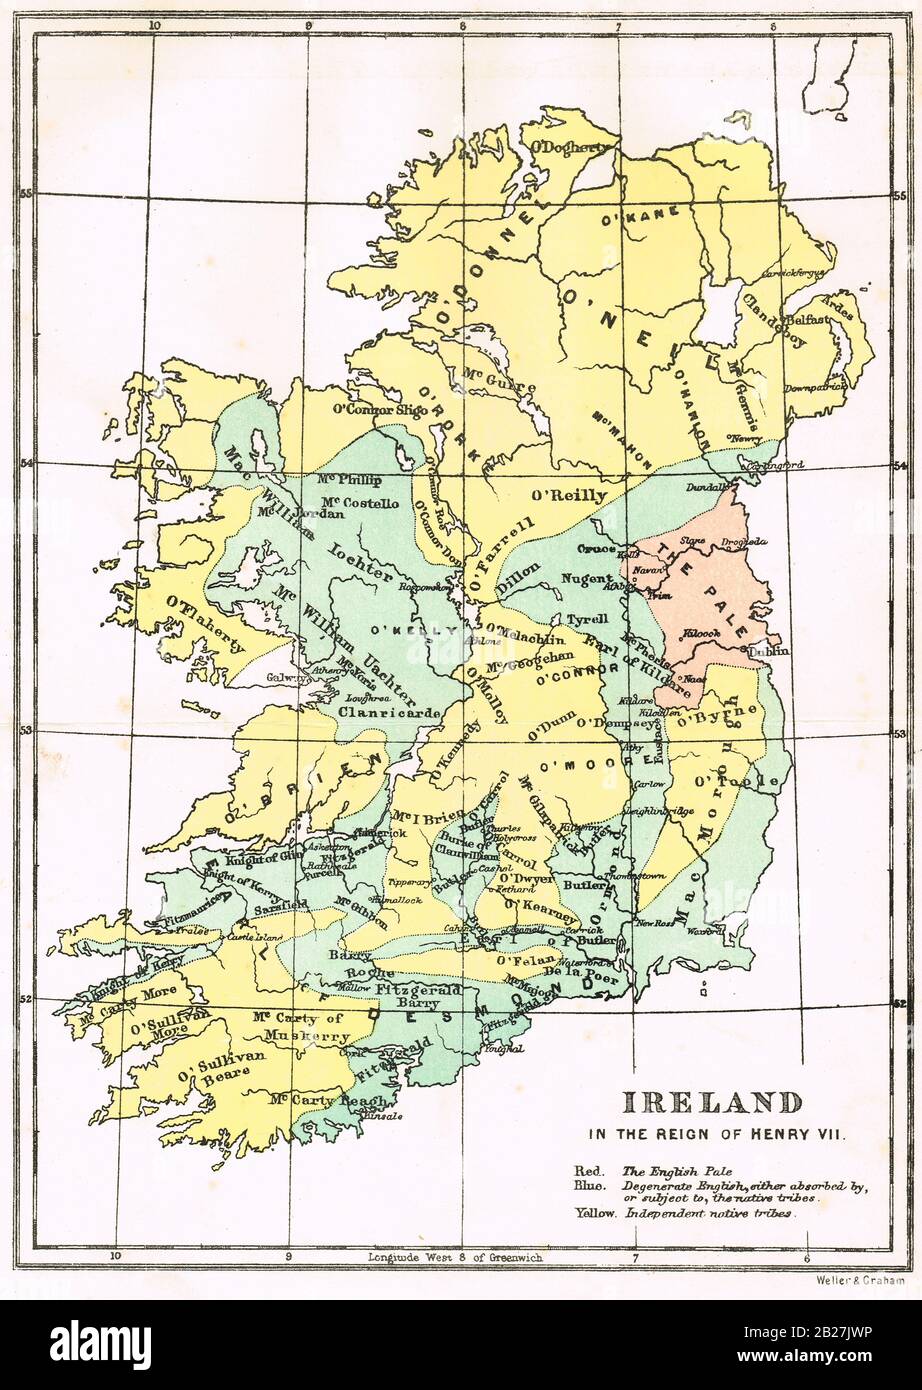 Mappa di Irlanda, nel regno di Enrico VII, che mostra l'inglese pallido, Degenerare inglese, e indipendenti tribù native Foto Stock